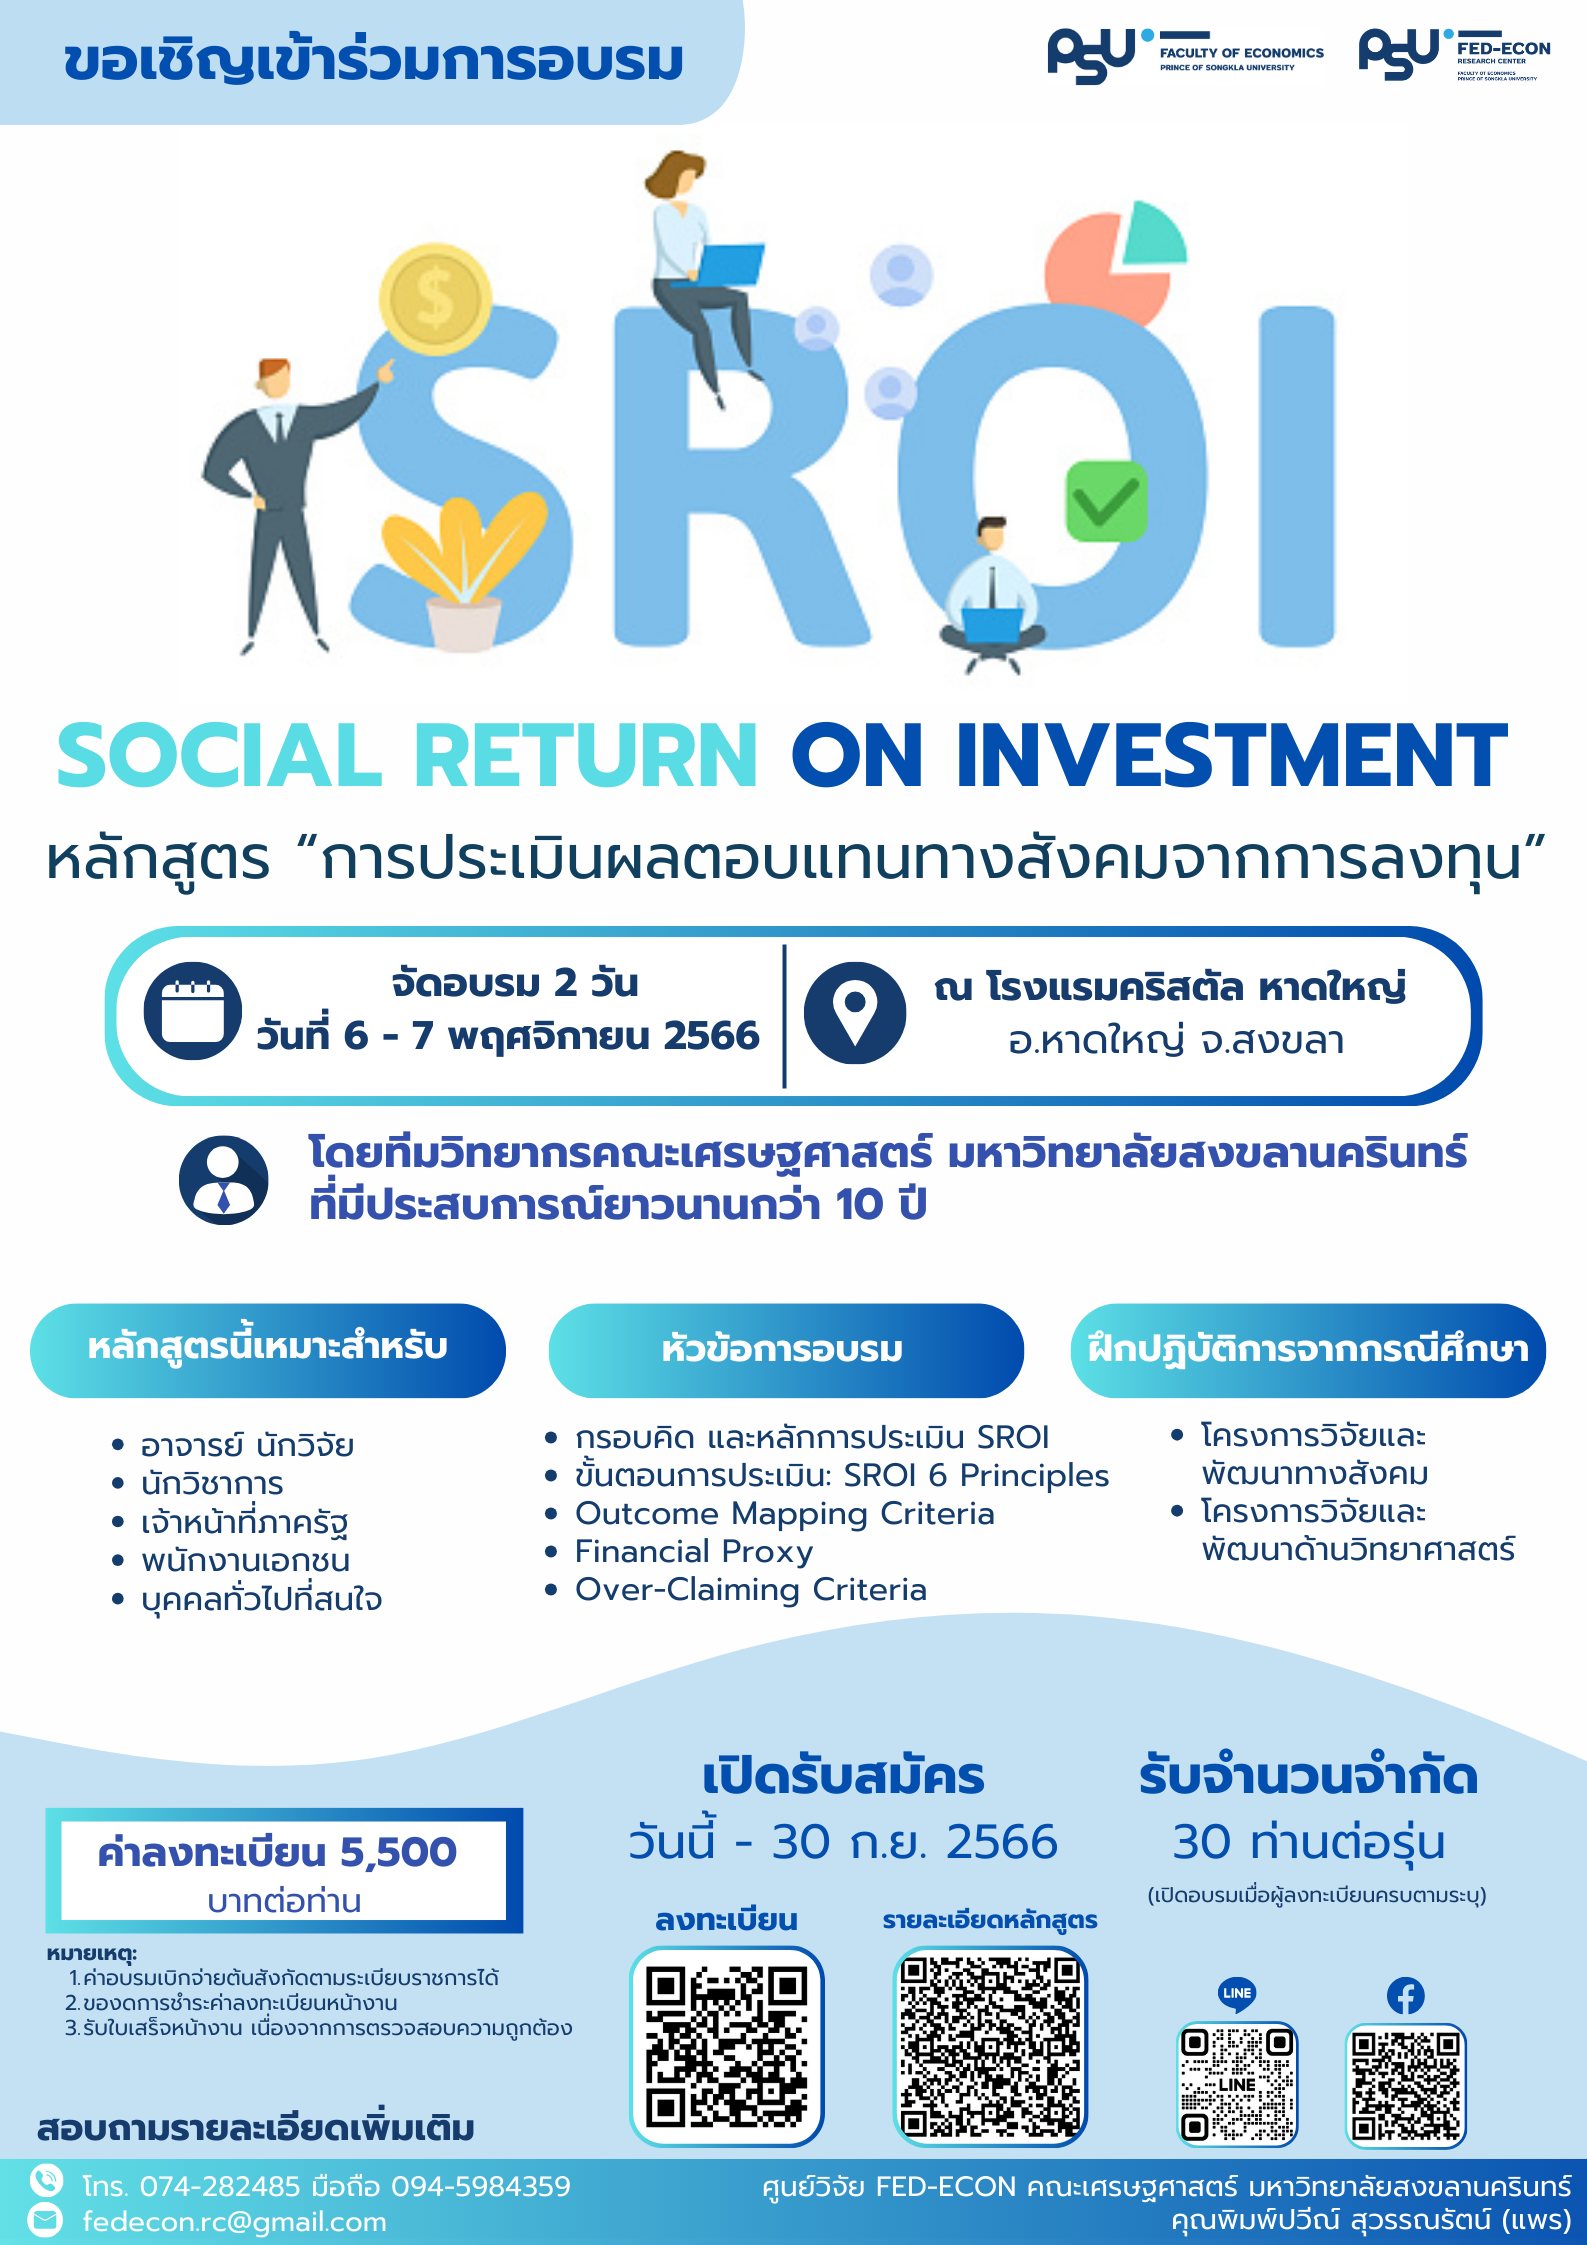 หลักสูตร การประเมินผลตอบแทนทางสังคมจากการลงทุน Social Return on Investment SROI